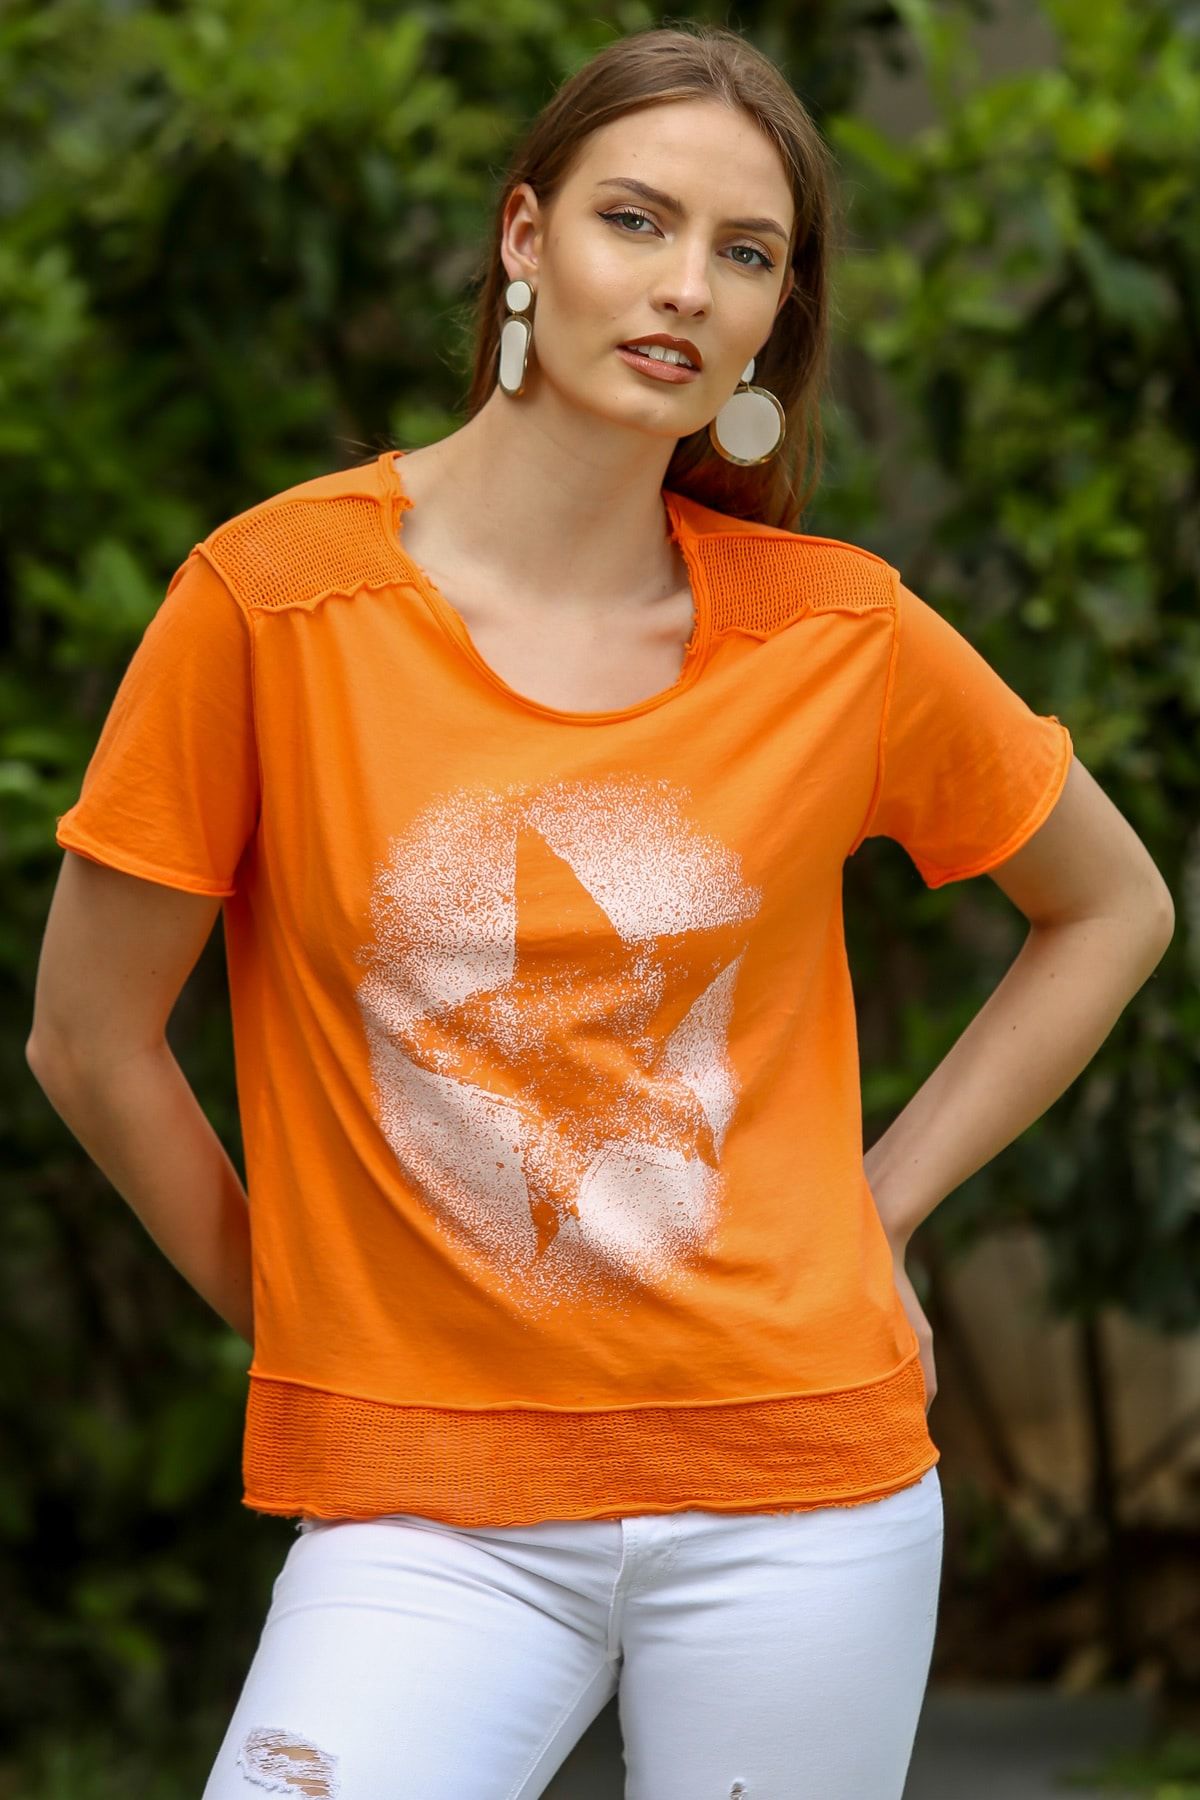 Chiccy Kadın Turuncu Sıfır Yaka Omzu Ve Etek Ucu File Yıldız Baskılı Yıkamalı T-Shirt M10010300TS98209